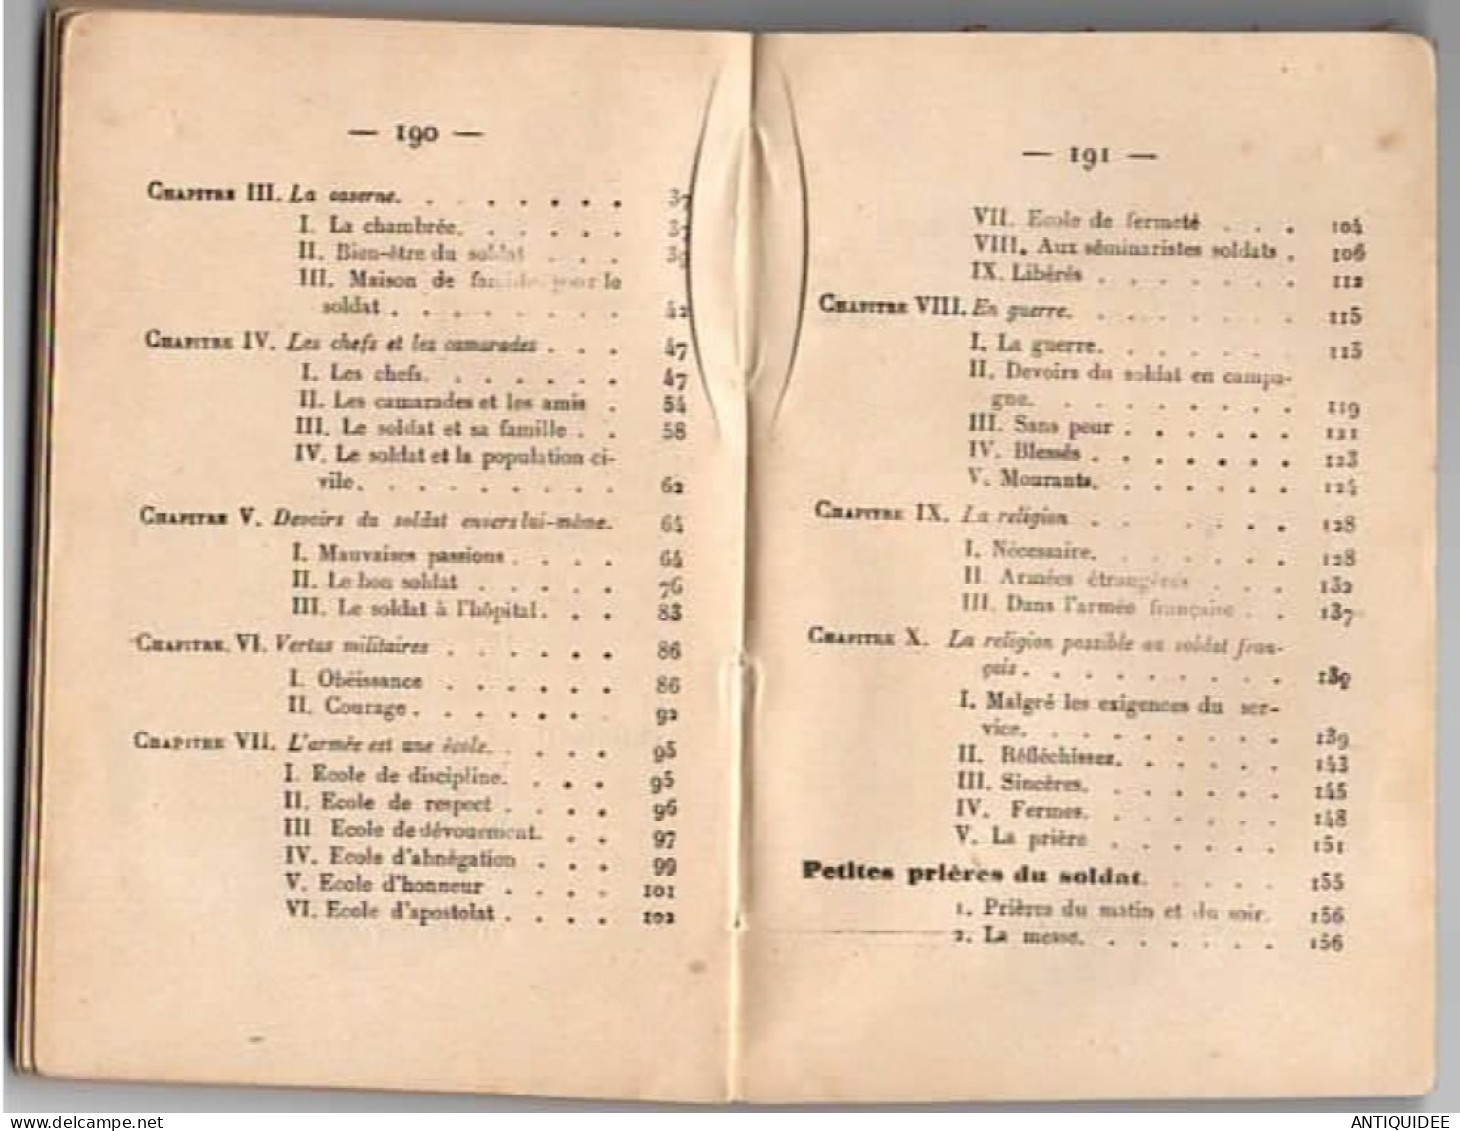 LE LIVRE DE POCHE DU SOLDAT FRANCAIS par le Chanoine GIRARD - Editions Gabriel BEAUCHESNE, PARIS en 1915 -